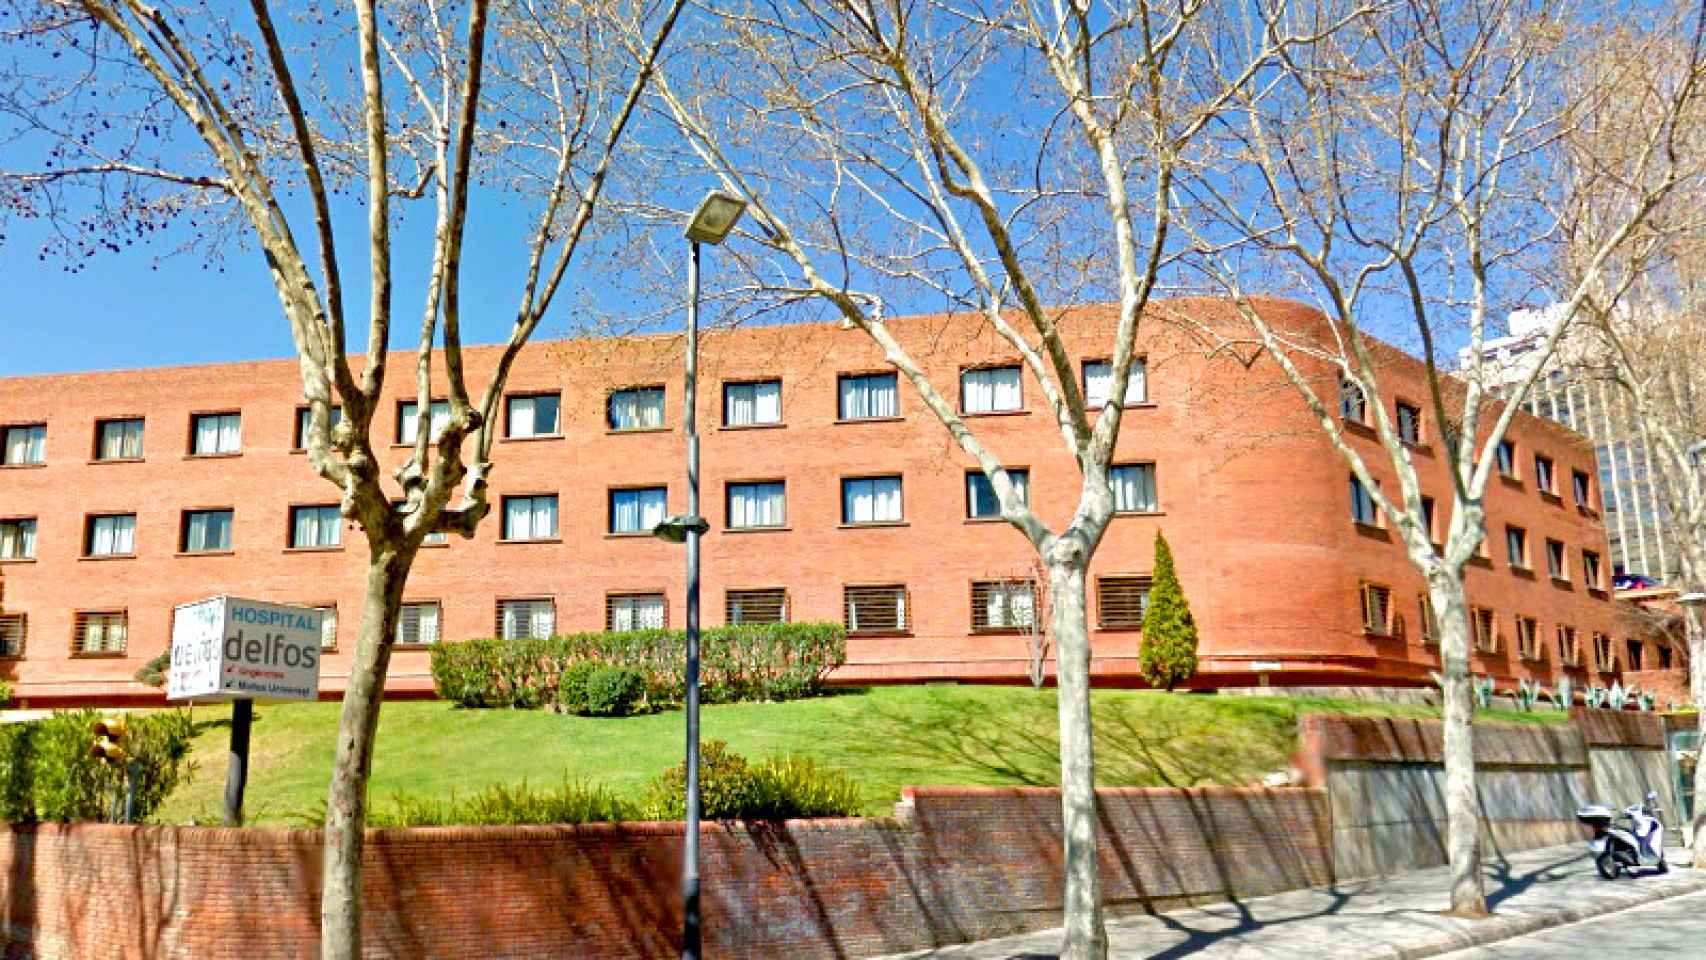 Imagen de archivo del exterior del Hospital Delfos de Barcelona / CG